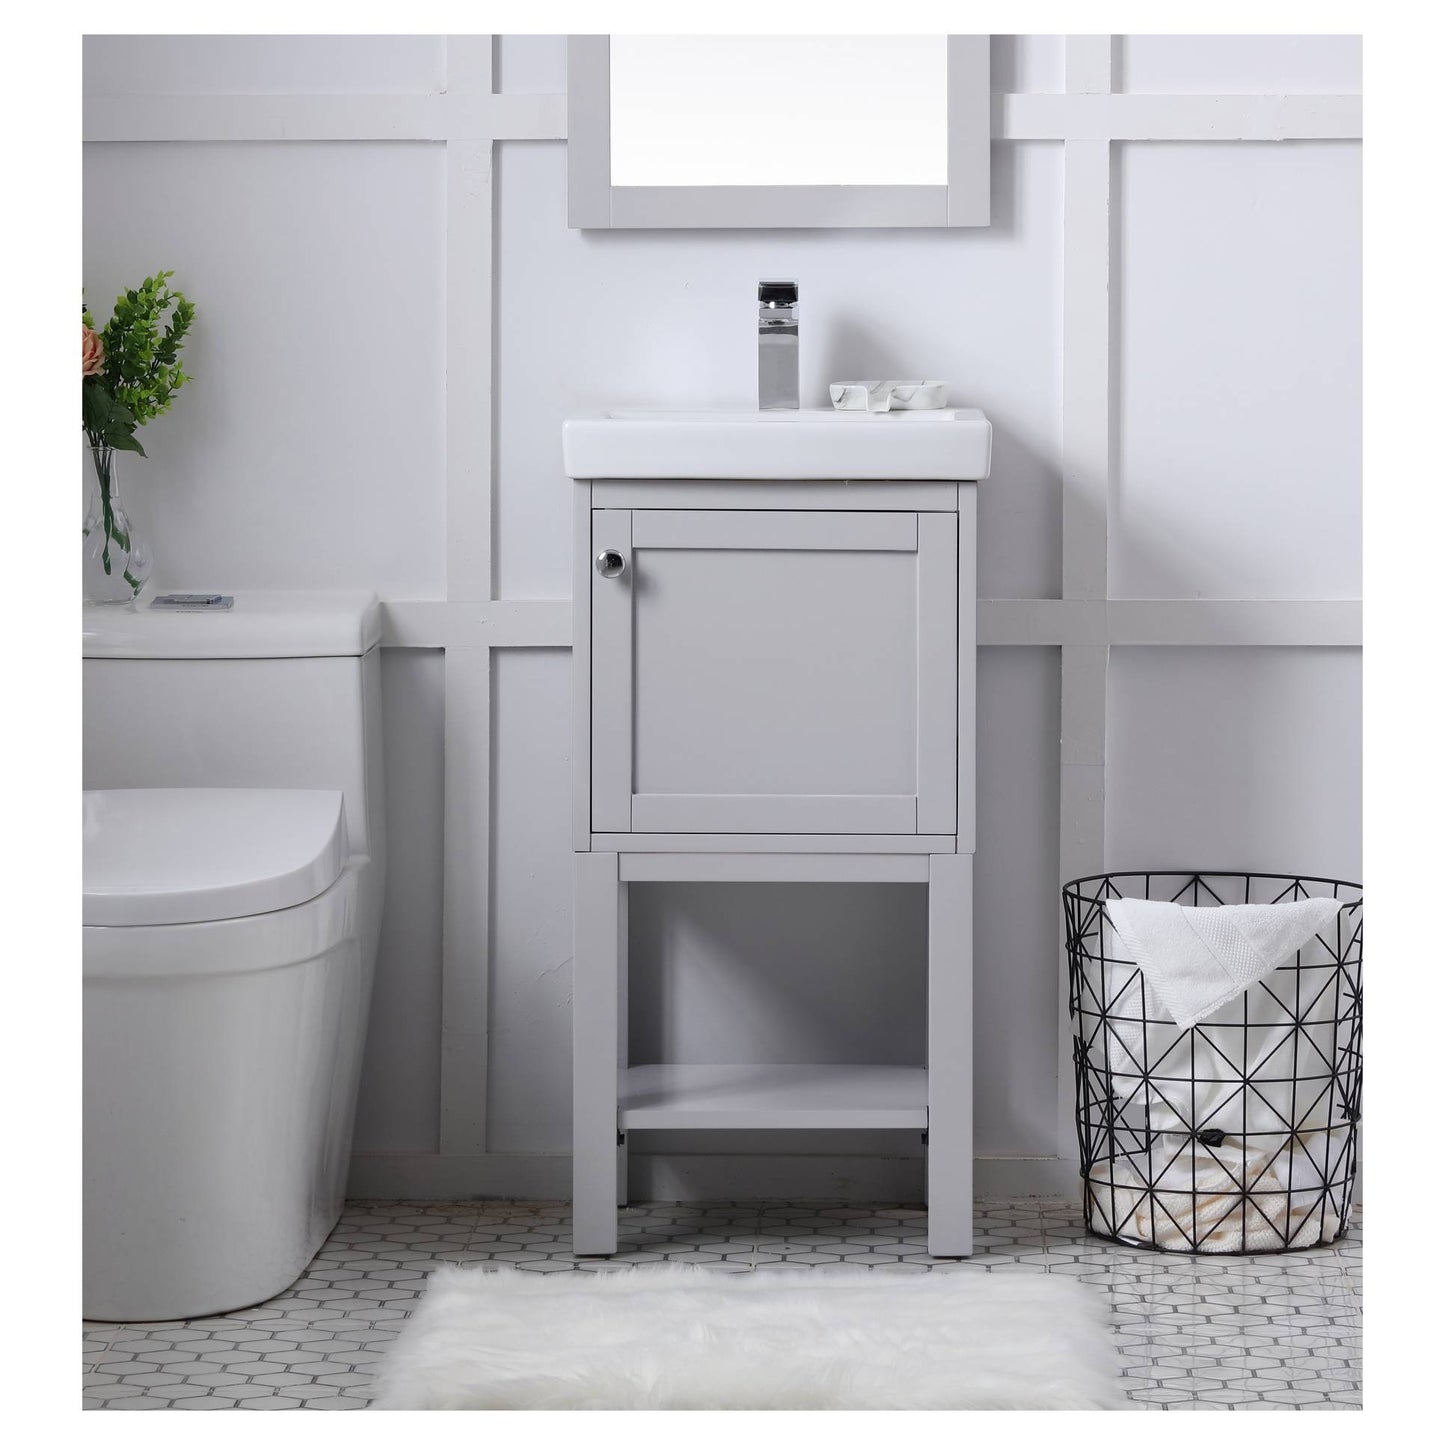 VF2518GR 18" Single Bathroom Vanity Set in Grey